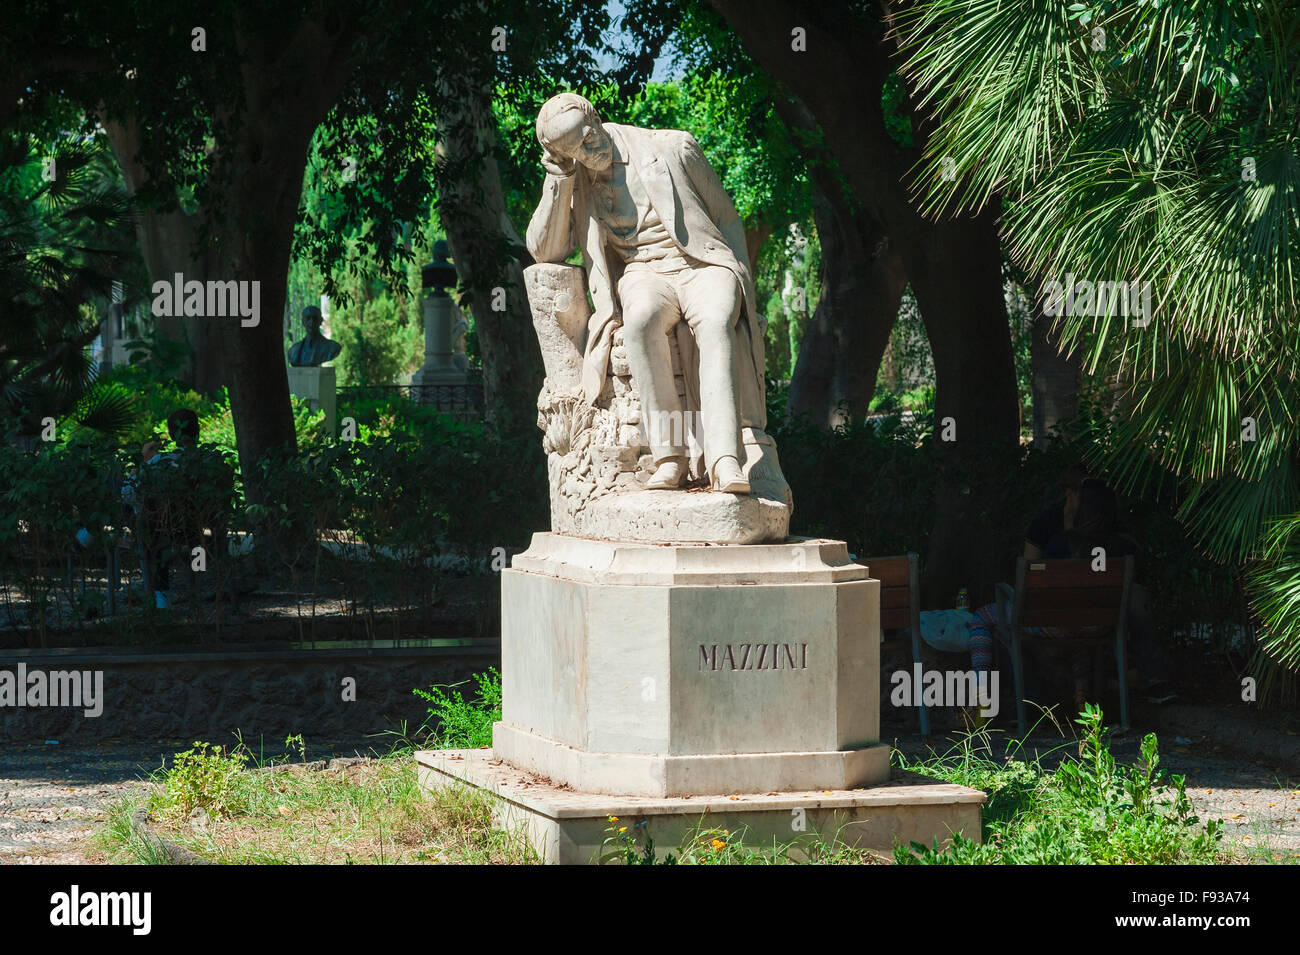 Mazzini statue, view in summer of the statue of the Italian politician and journalist Giuseppe Mazzini in the Villa Bellini, Catania, Sicily, Stock Photo